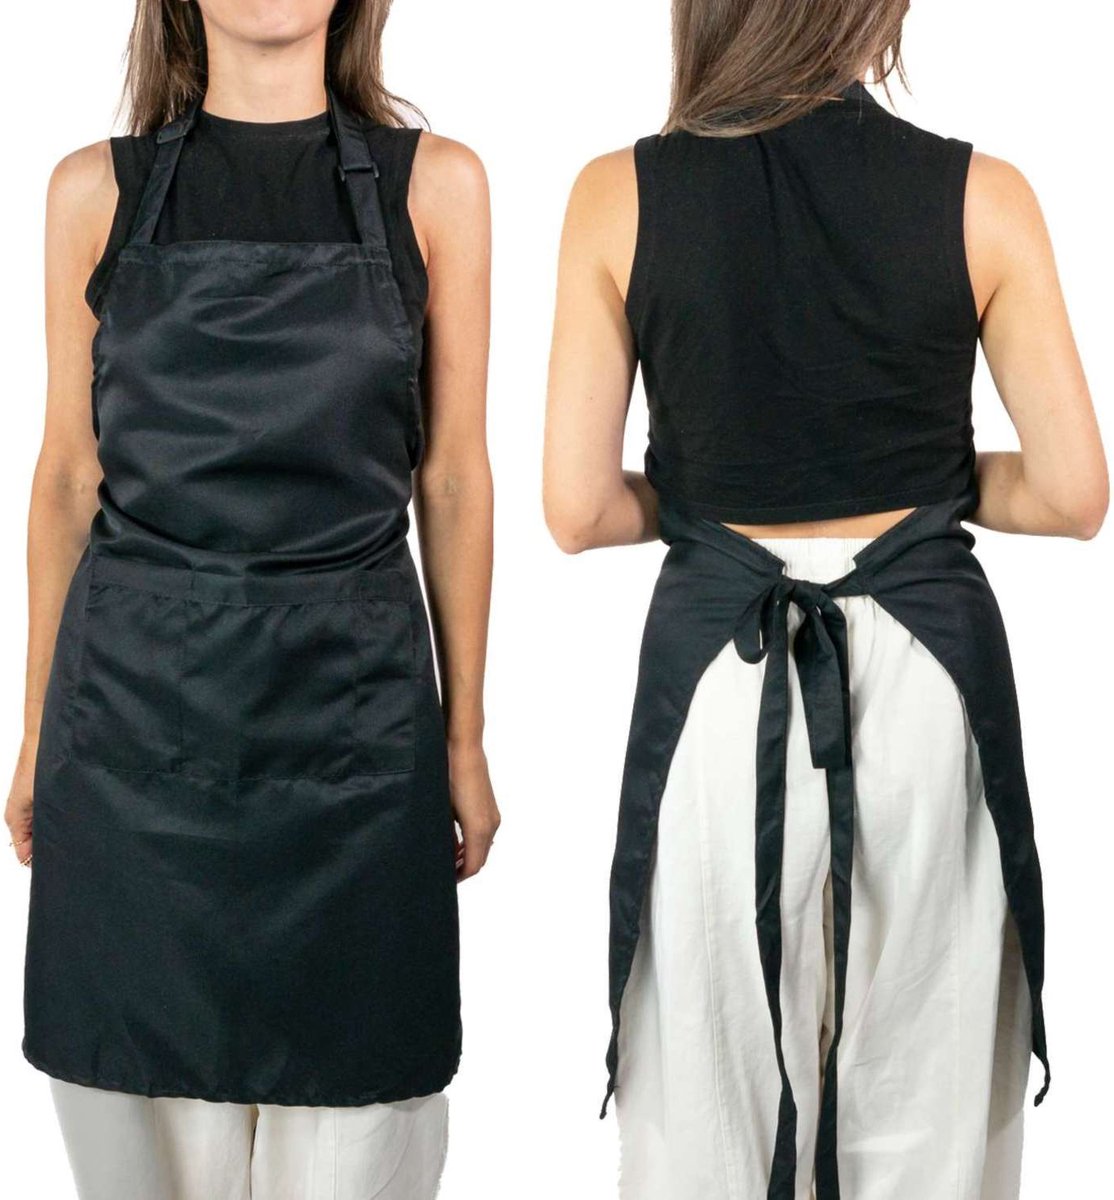 Intirilife 2-delige set Kookschorten schorten van zwart polyester voor mannen en vrouwen ter bescherming tegen vlekken tijdens het koken